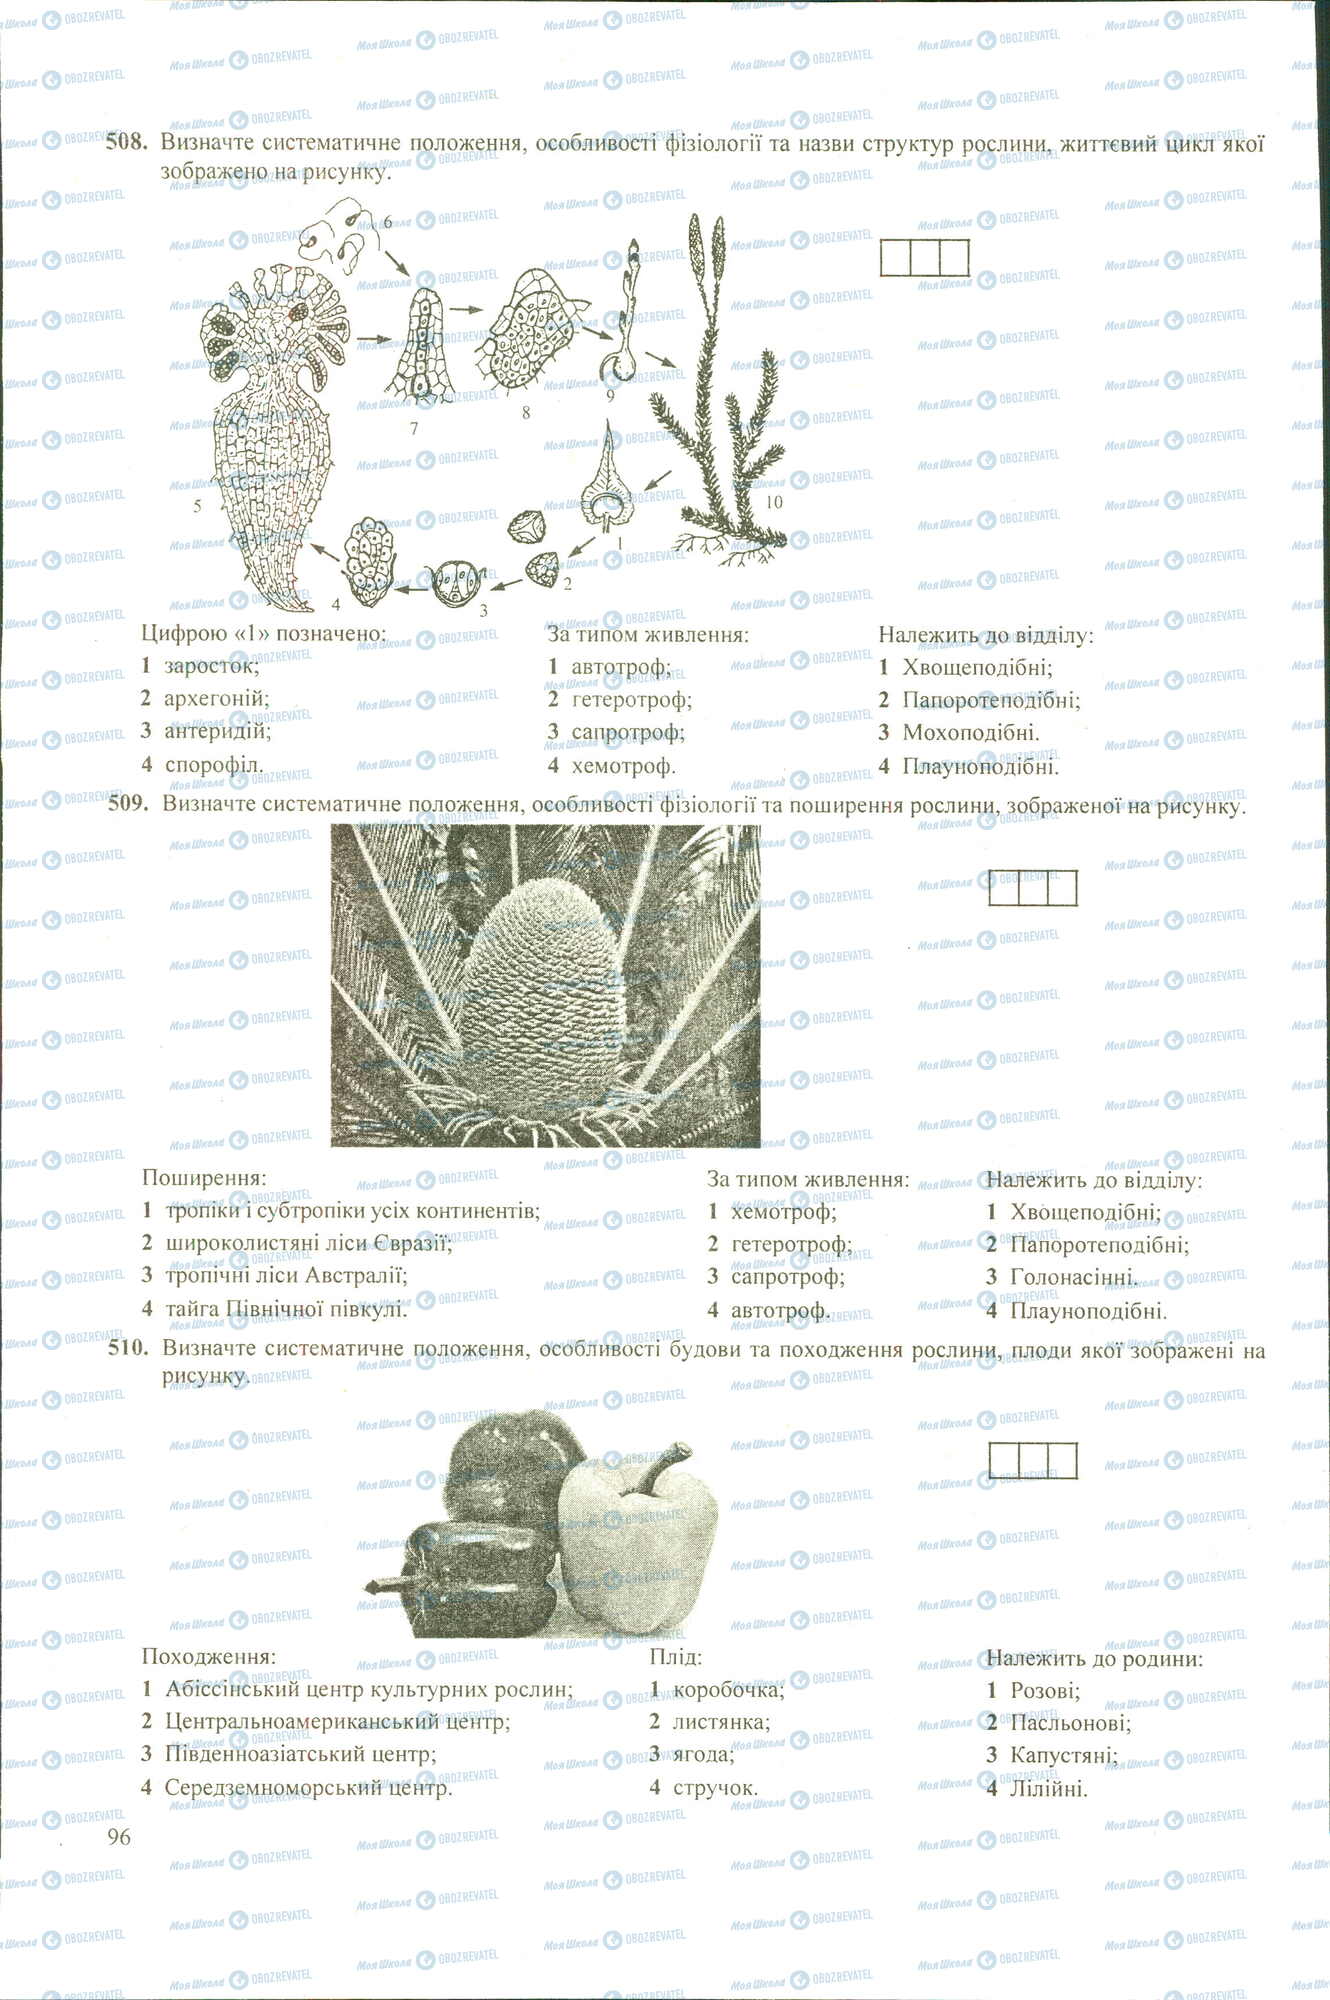 ЗНО Биология 11 класс страница 508-510